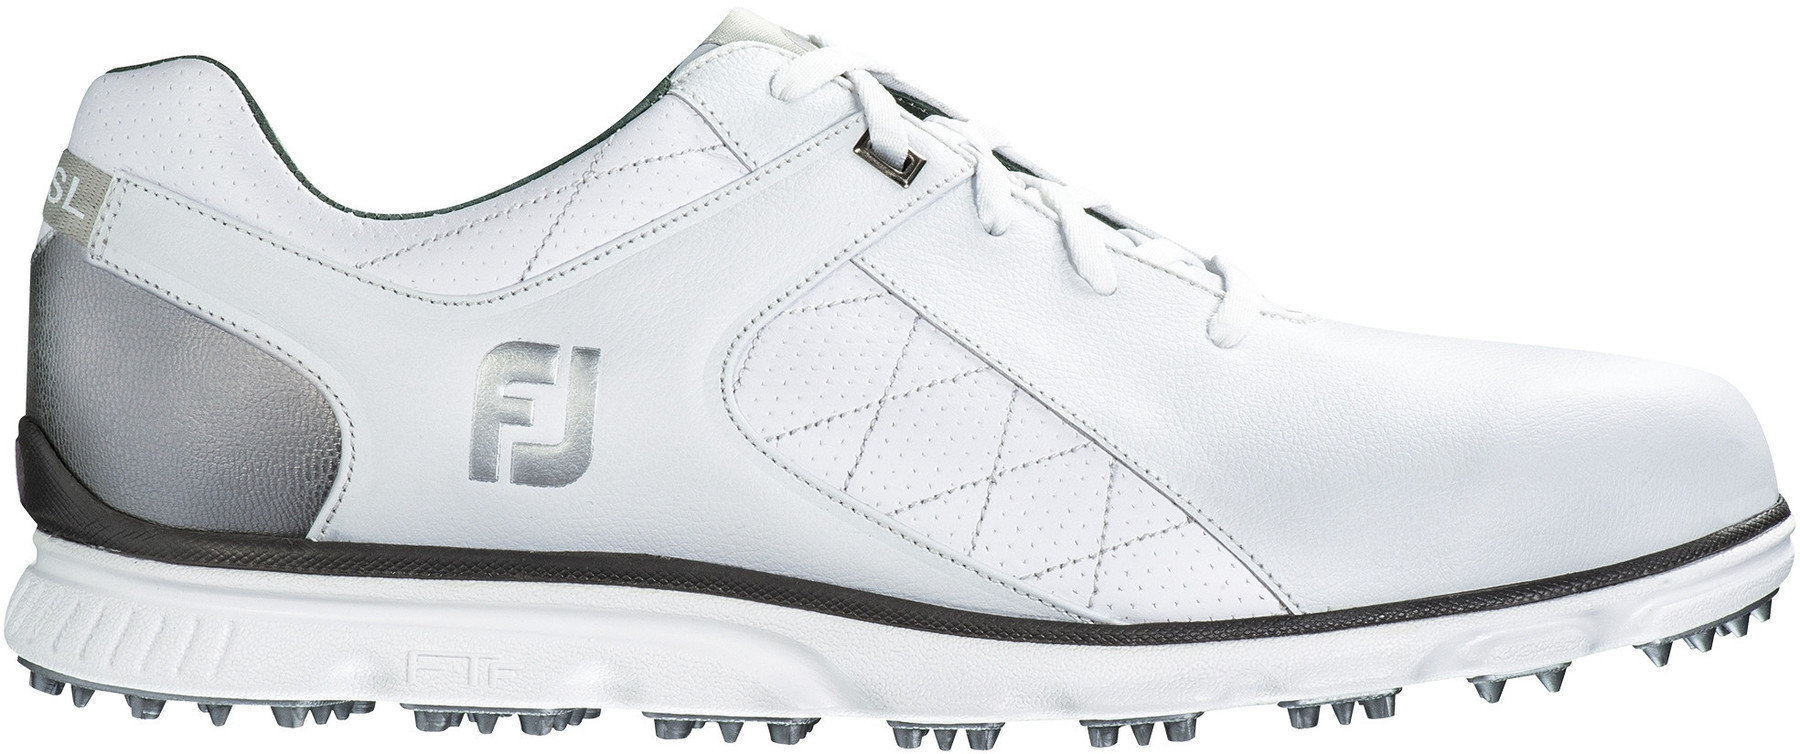 Chaussures de golf pour hommes Footjoy Pro SL Chaussures de Golf pour Hommes White/Silver US 9,5